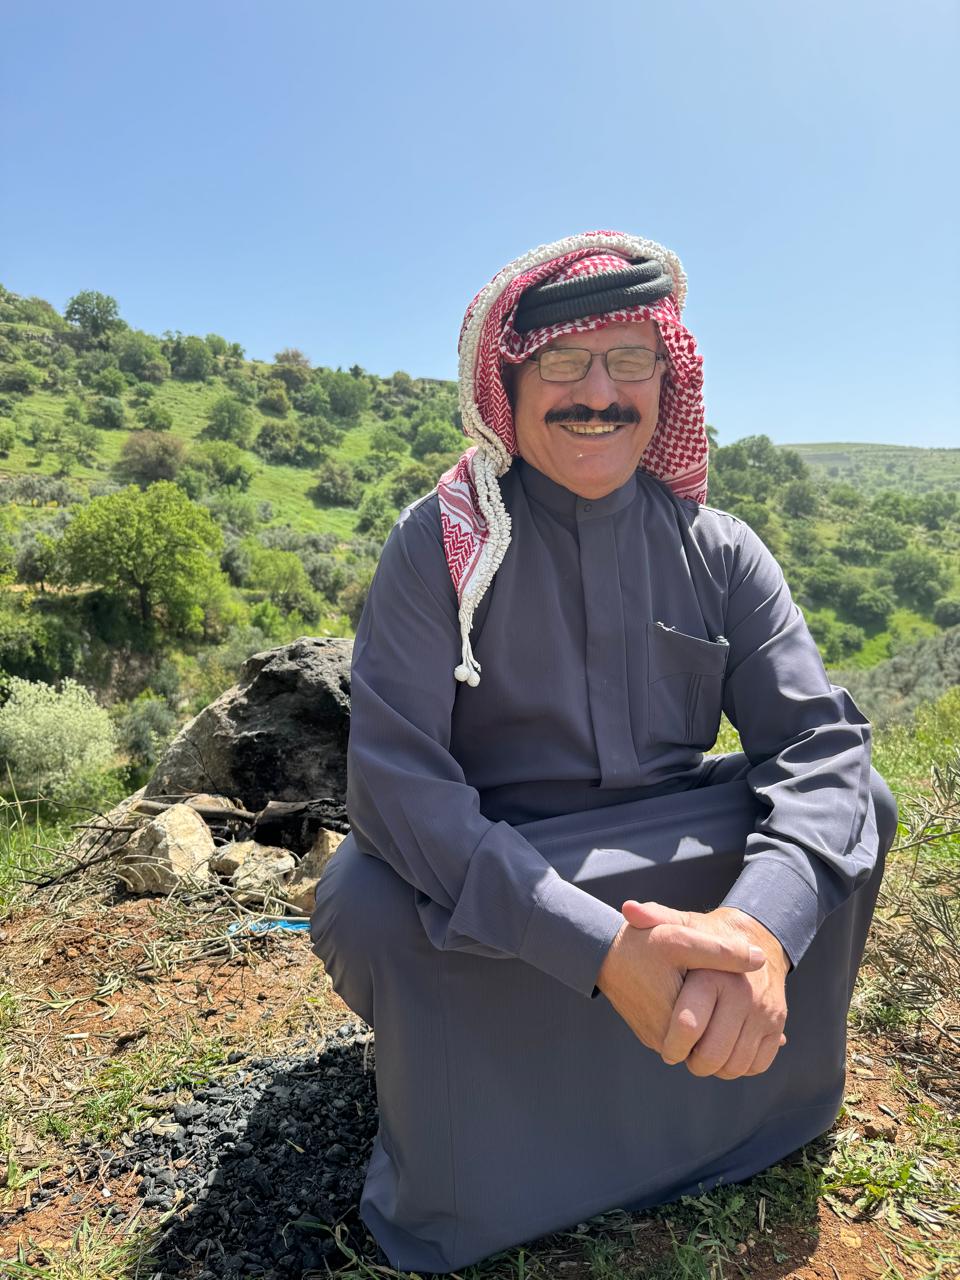 د. احمد عويدي العبادي يقدم كتاباً بالانجليزية عن العشائر الأردنية 